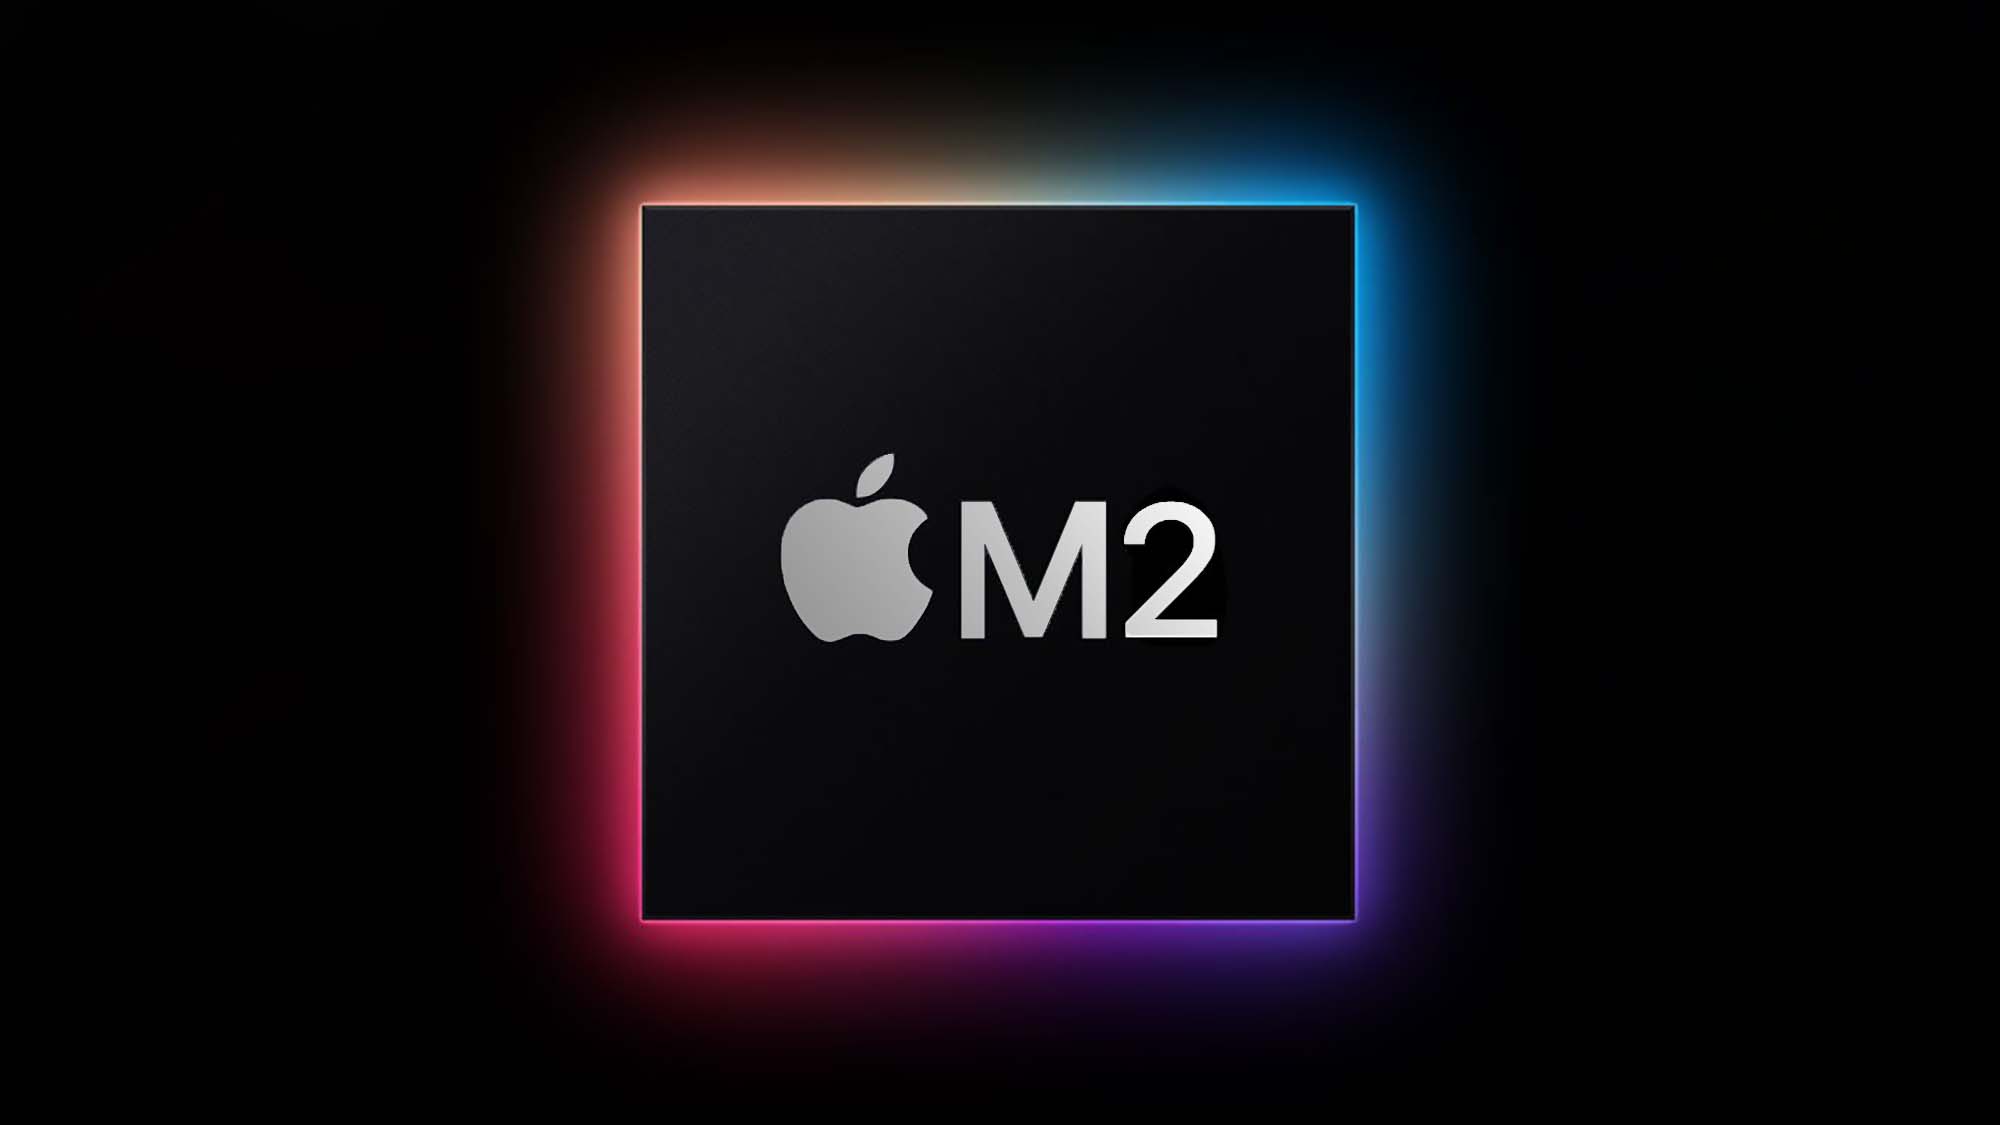 Gökkuşağı ışığıyla çevrelenmiş siyah bir kare ve ortada Apple logosu ve M2